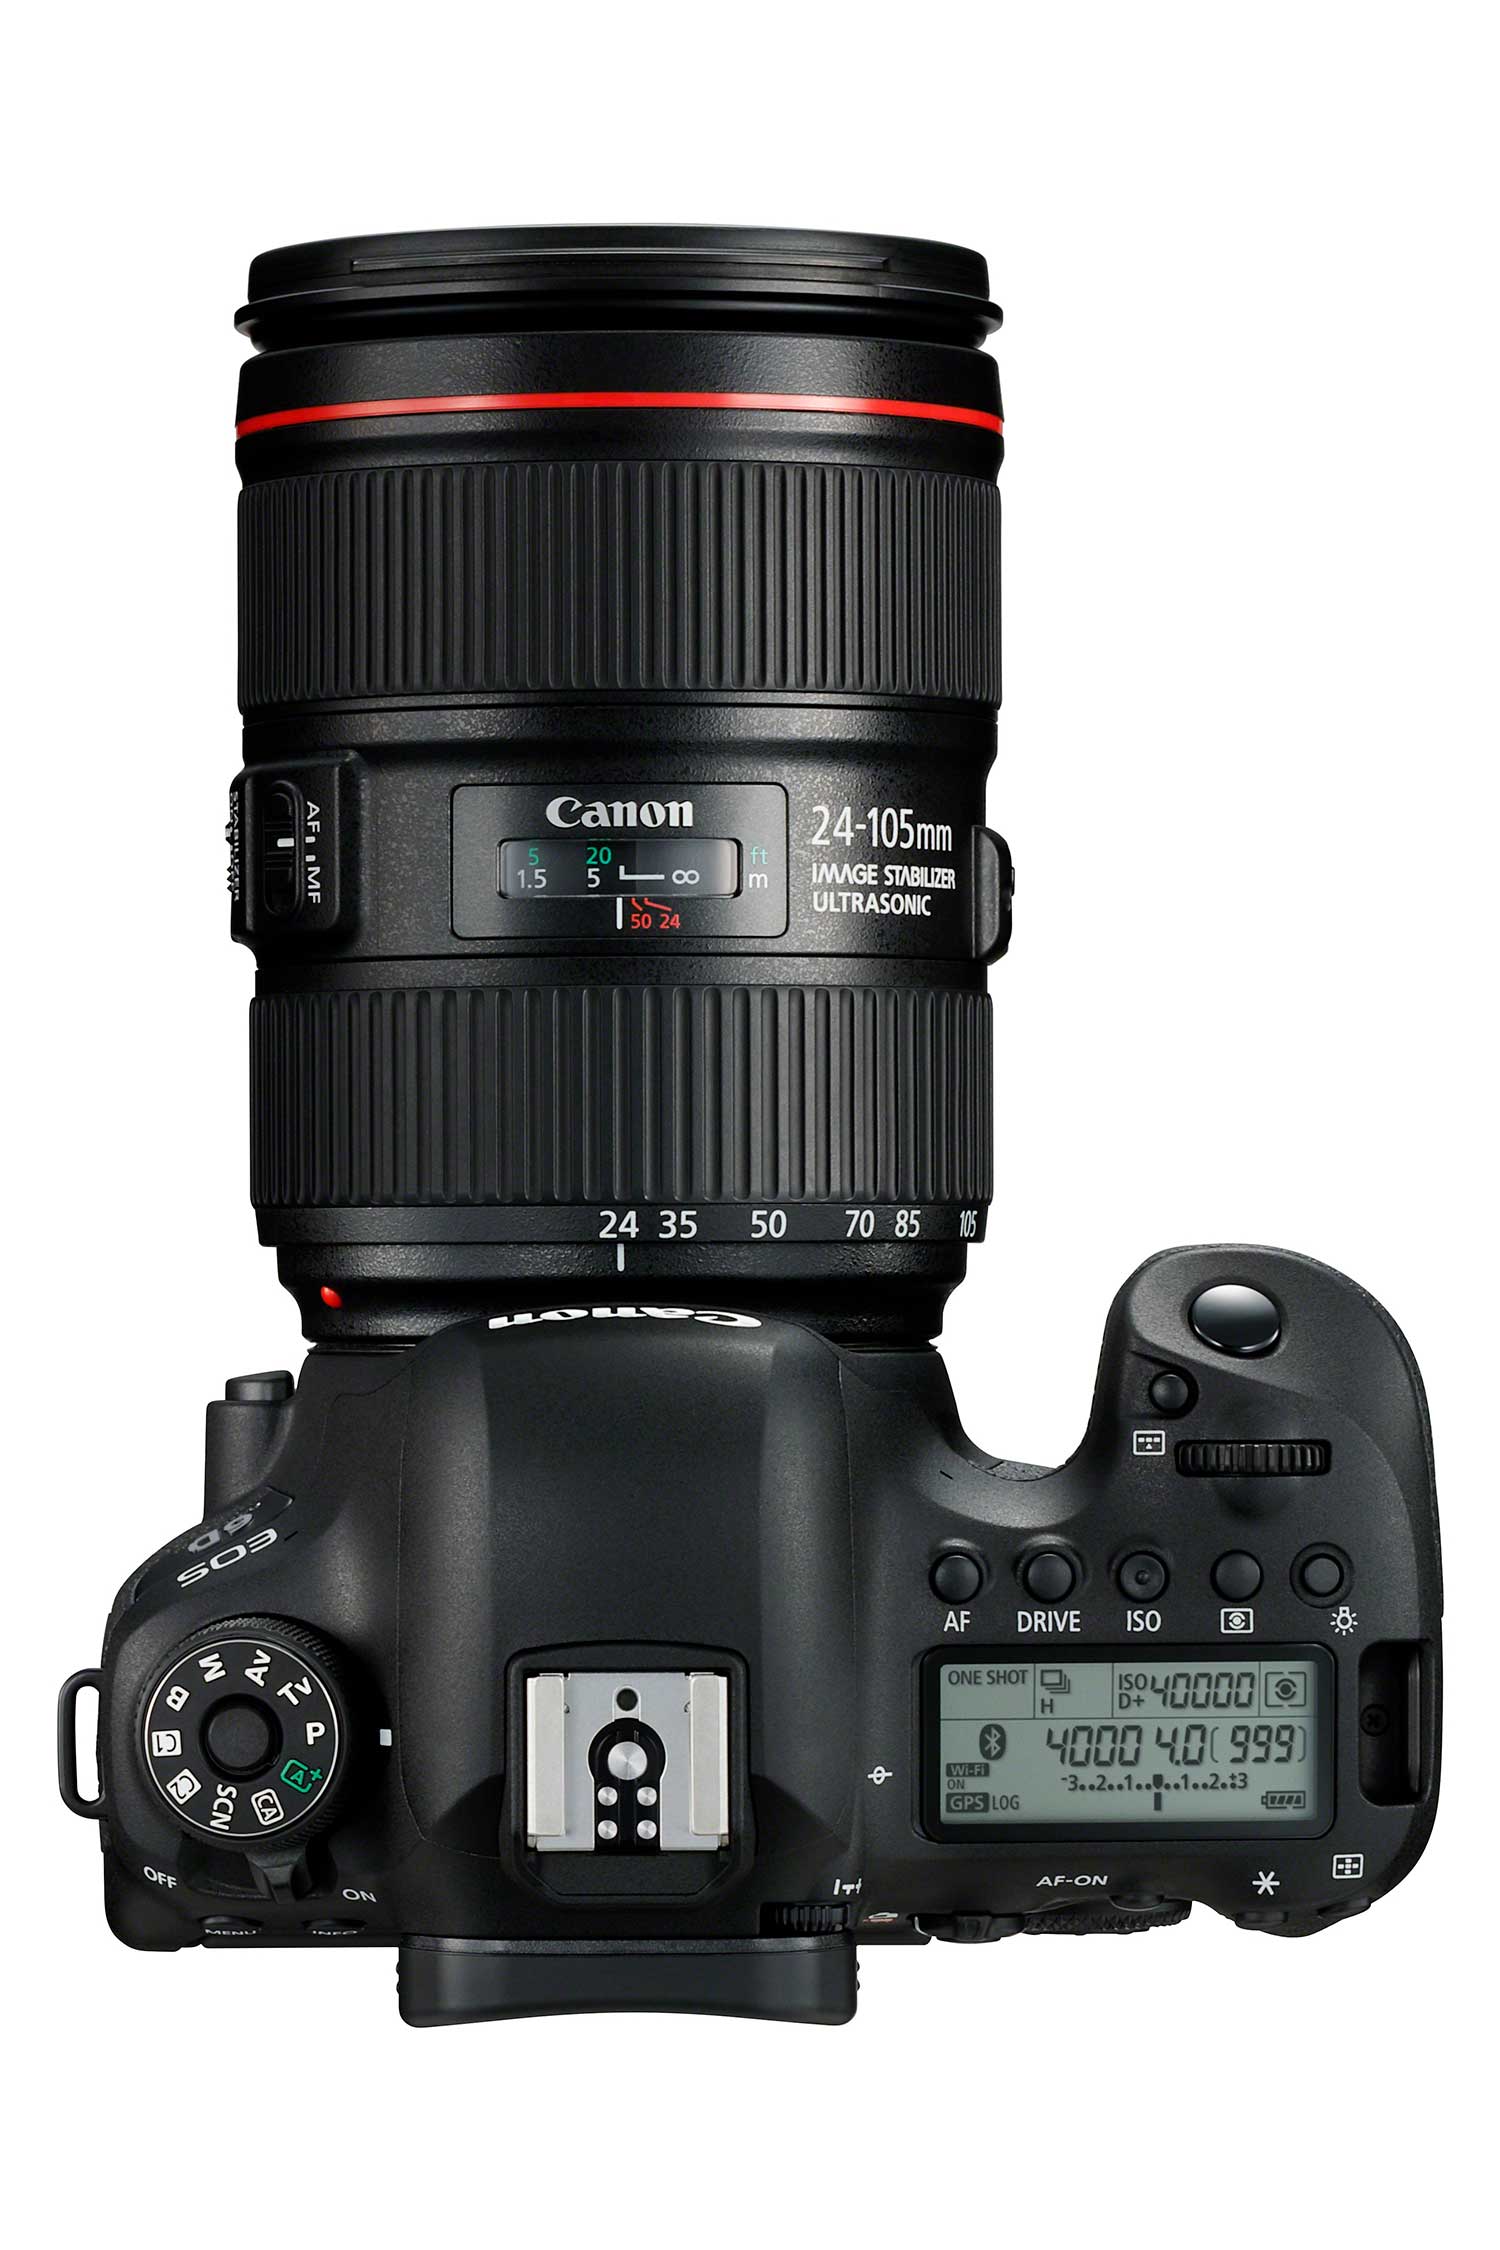 Canon stellt die EOS 6D Mark II vor